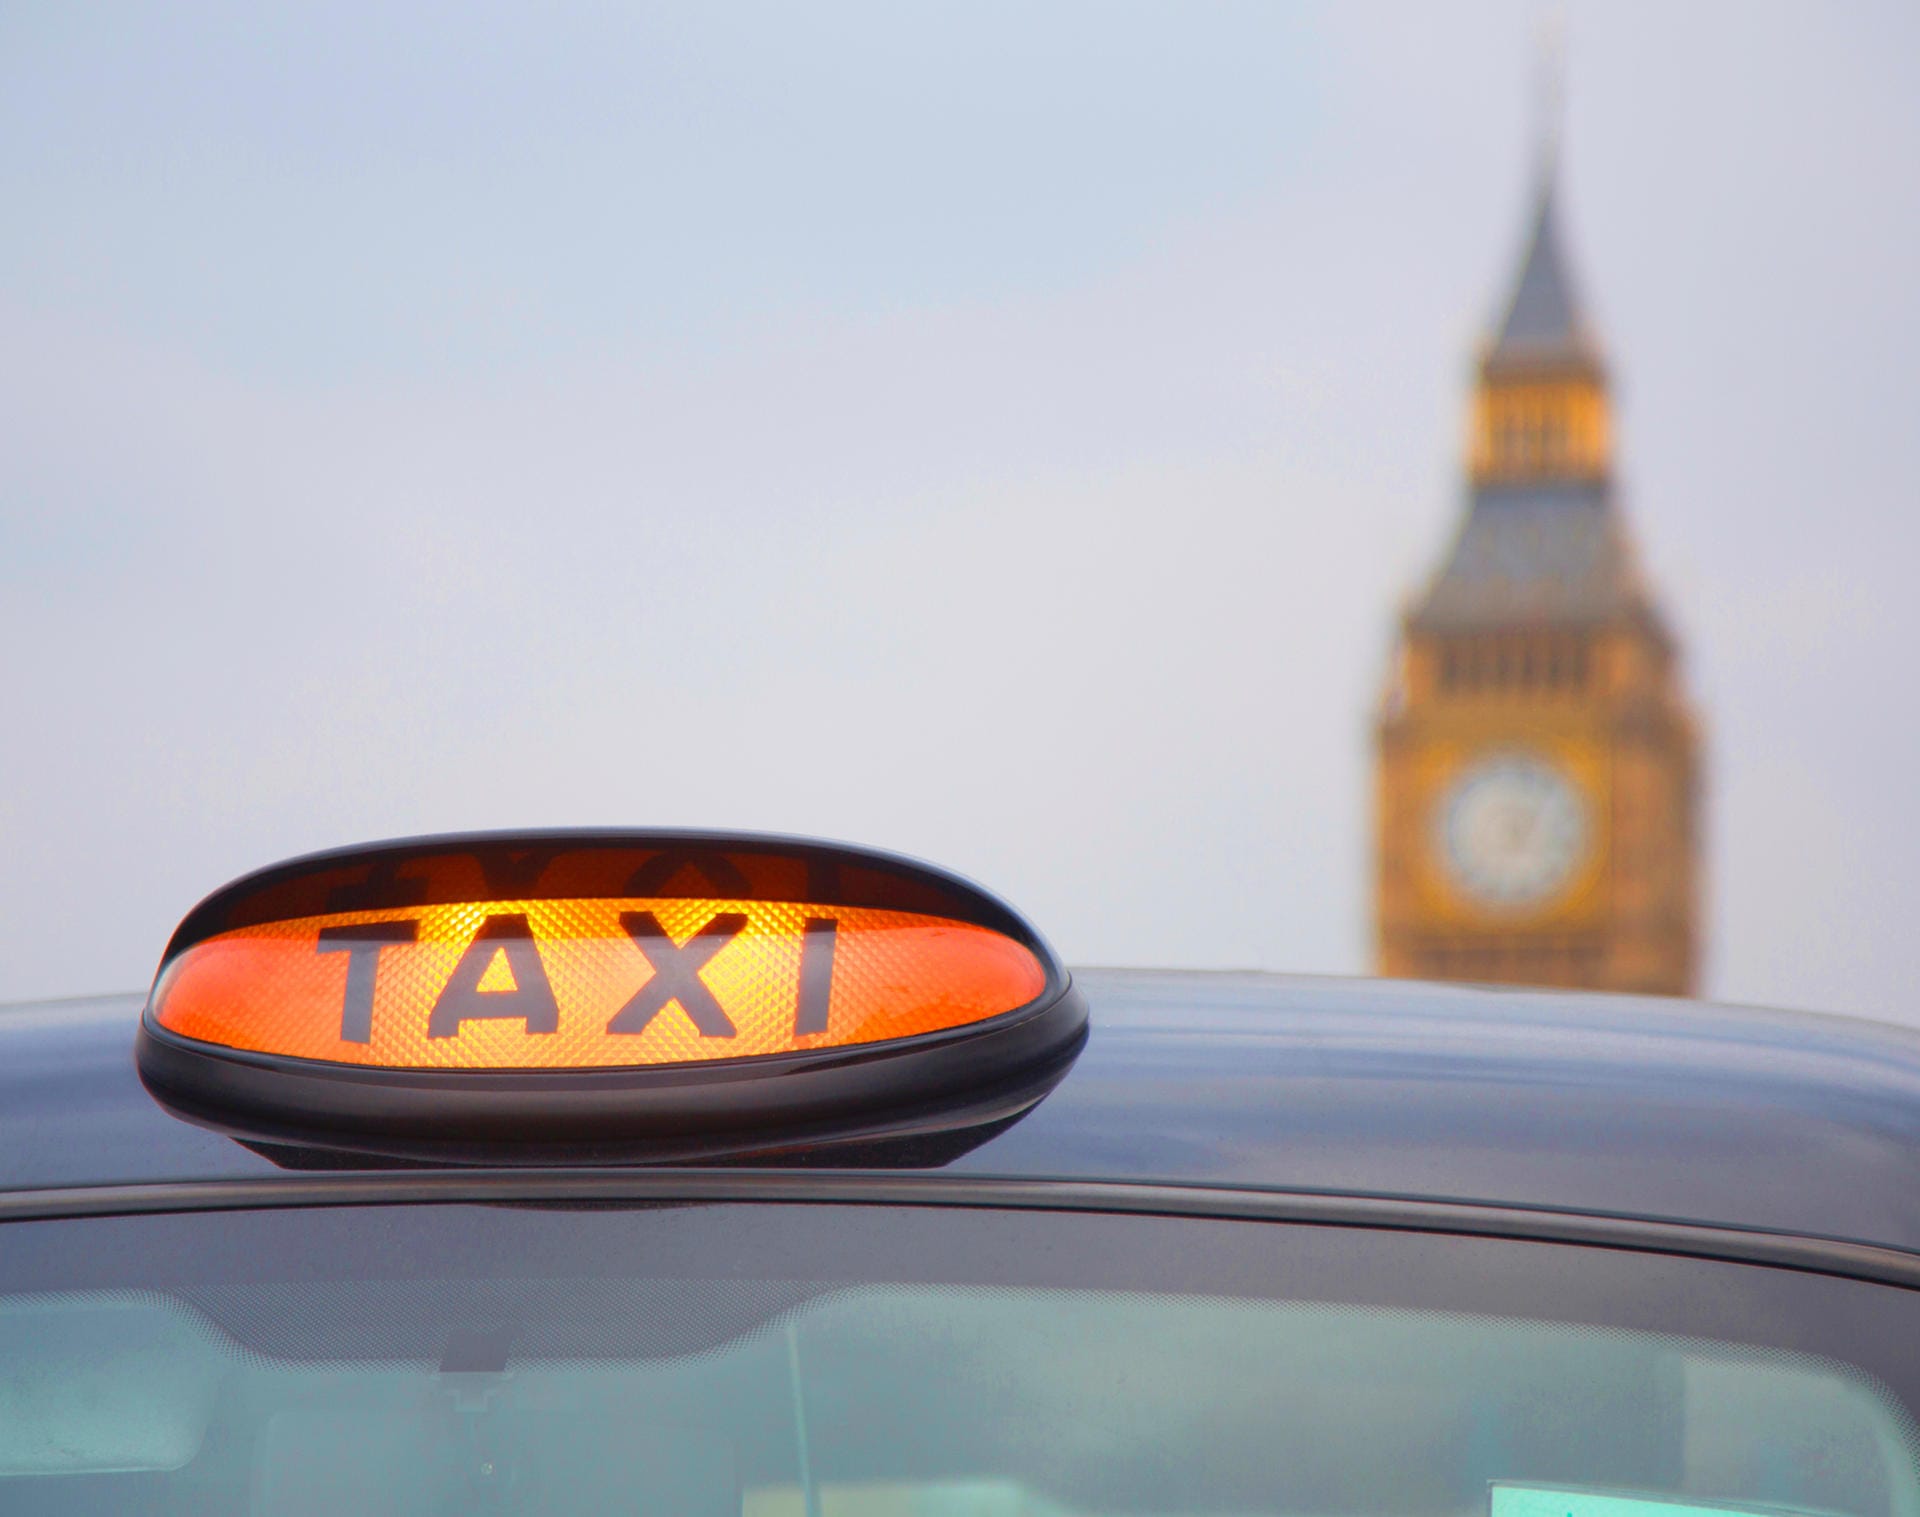 Taxi in London: Die großen Distanzen zur Innenstadt treiben die Taxipreise in die Höhe.